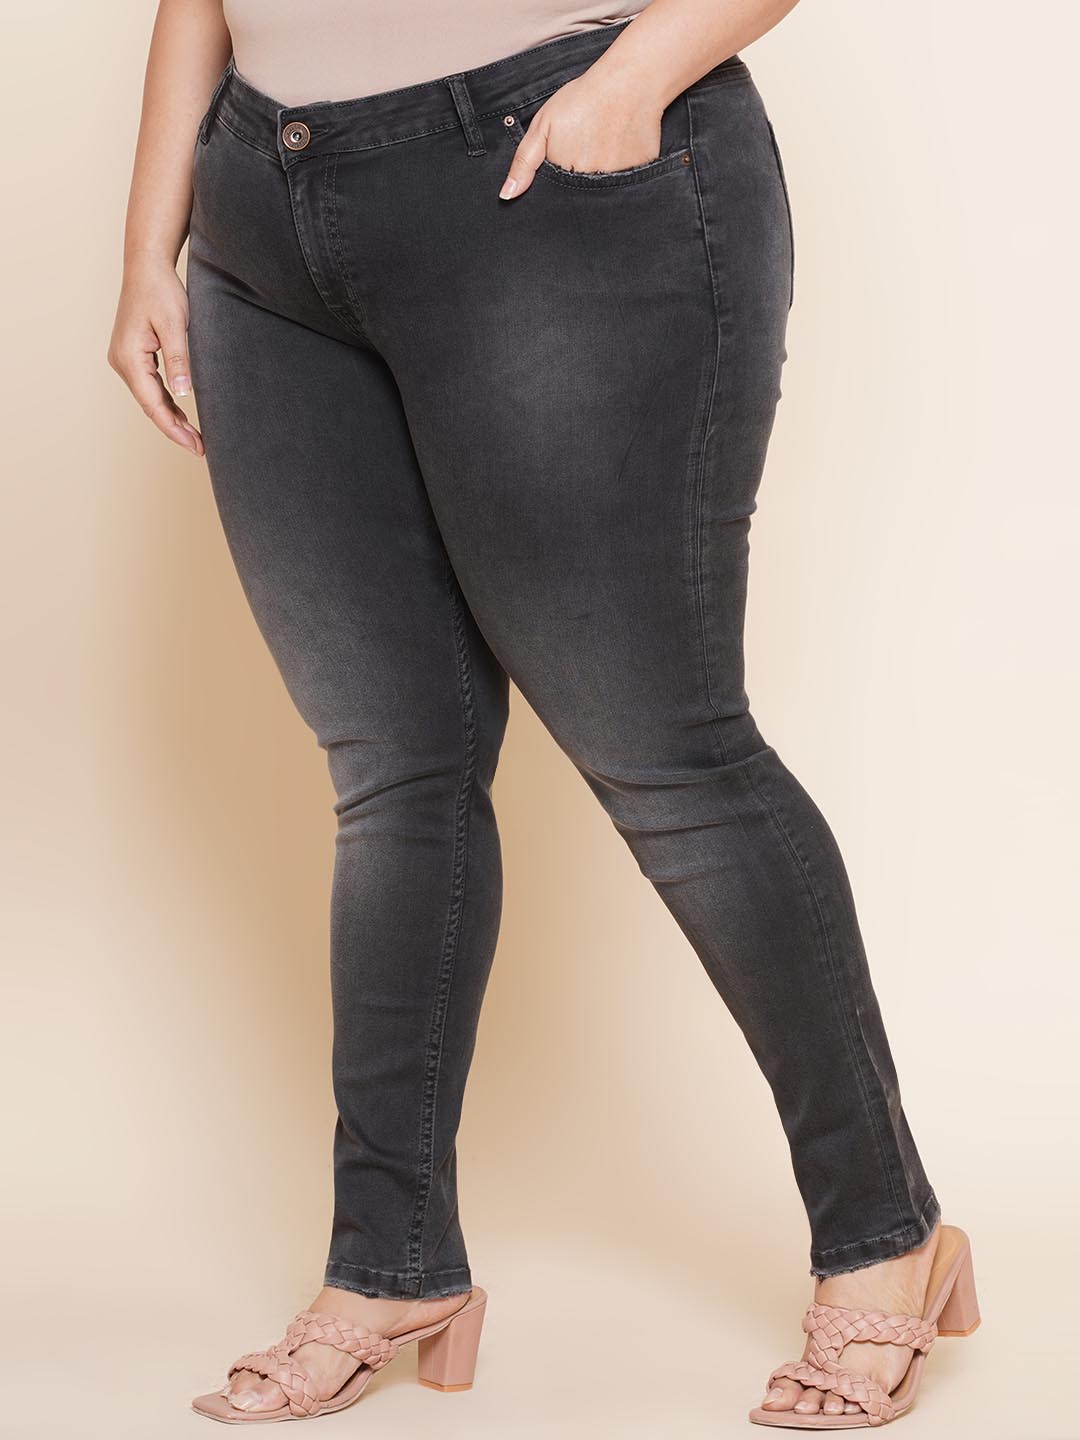 bottomwear_kiaahvi/jeans/KIJ6002/kij6002-4.jpg